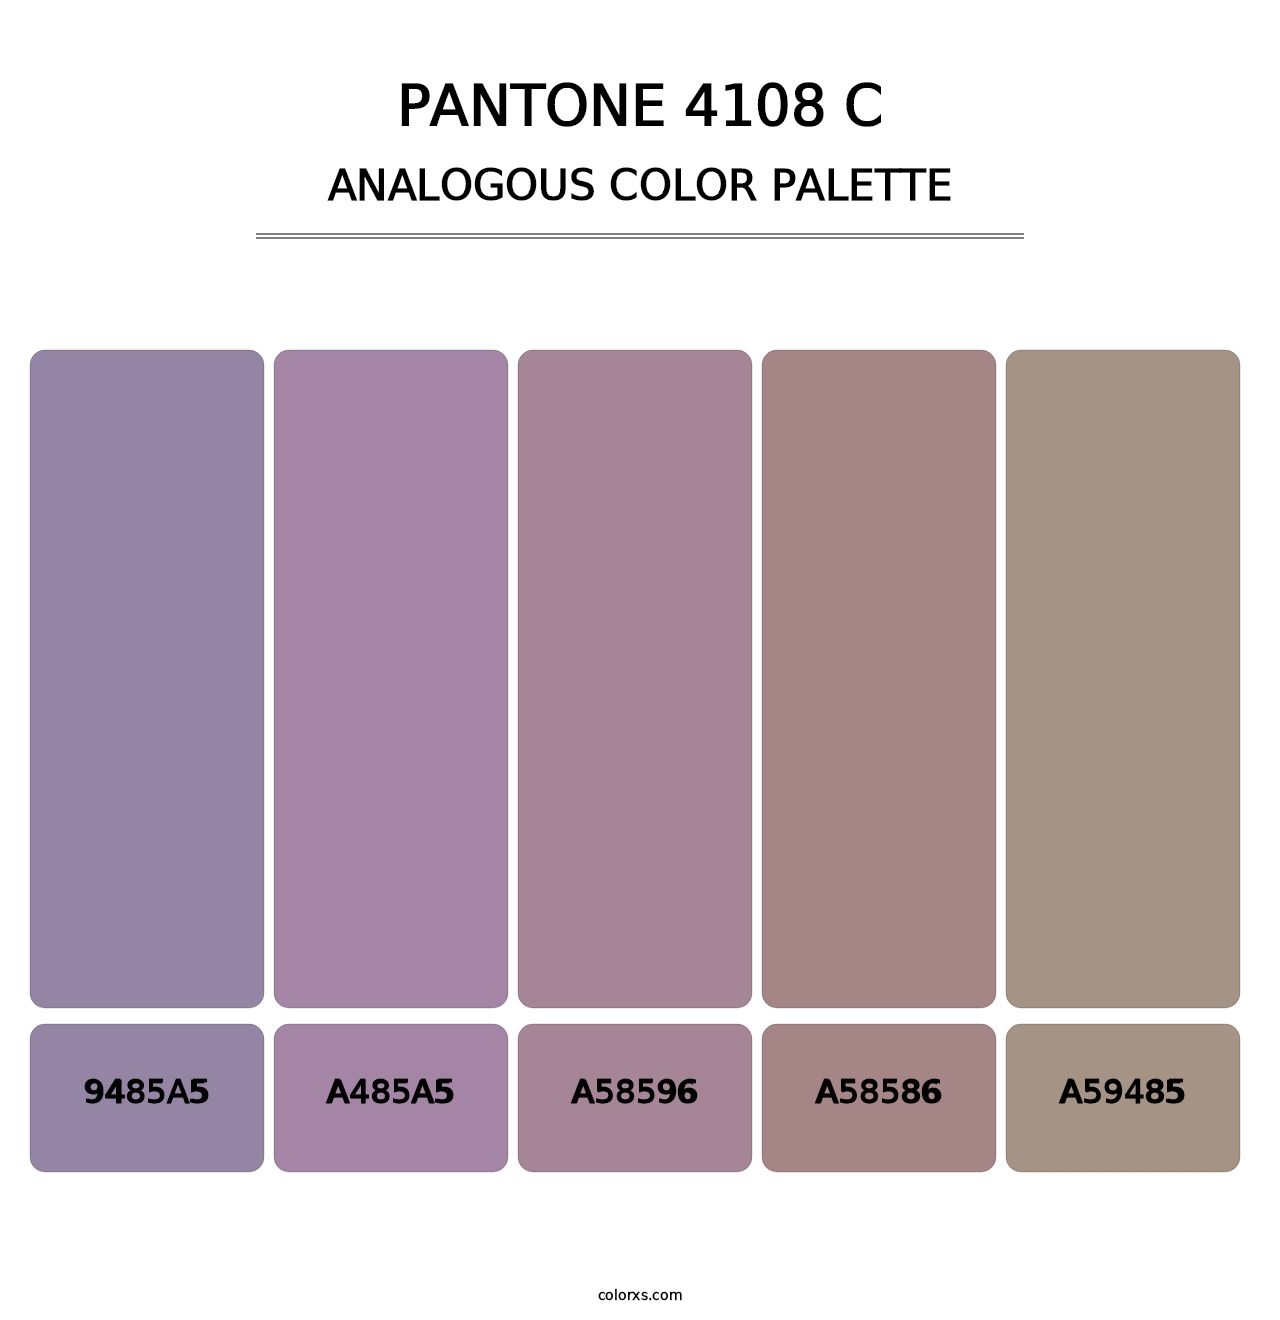 PANTONE 4108 C - Analogous Color Palette